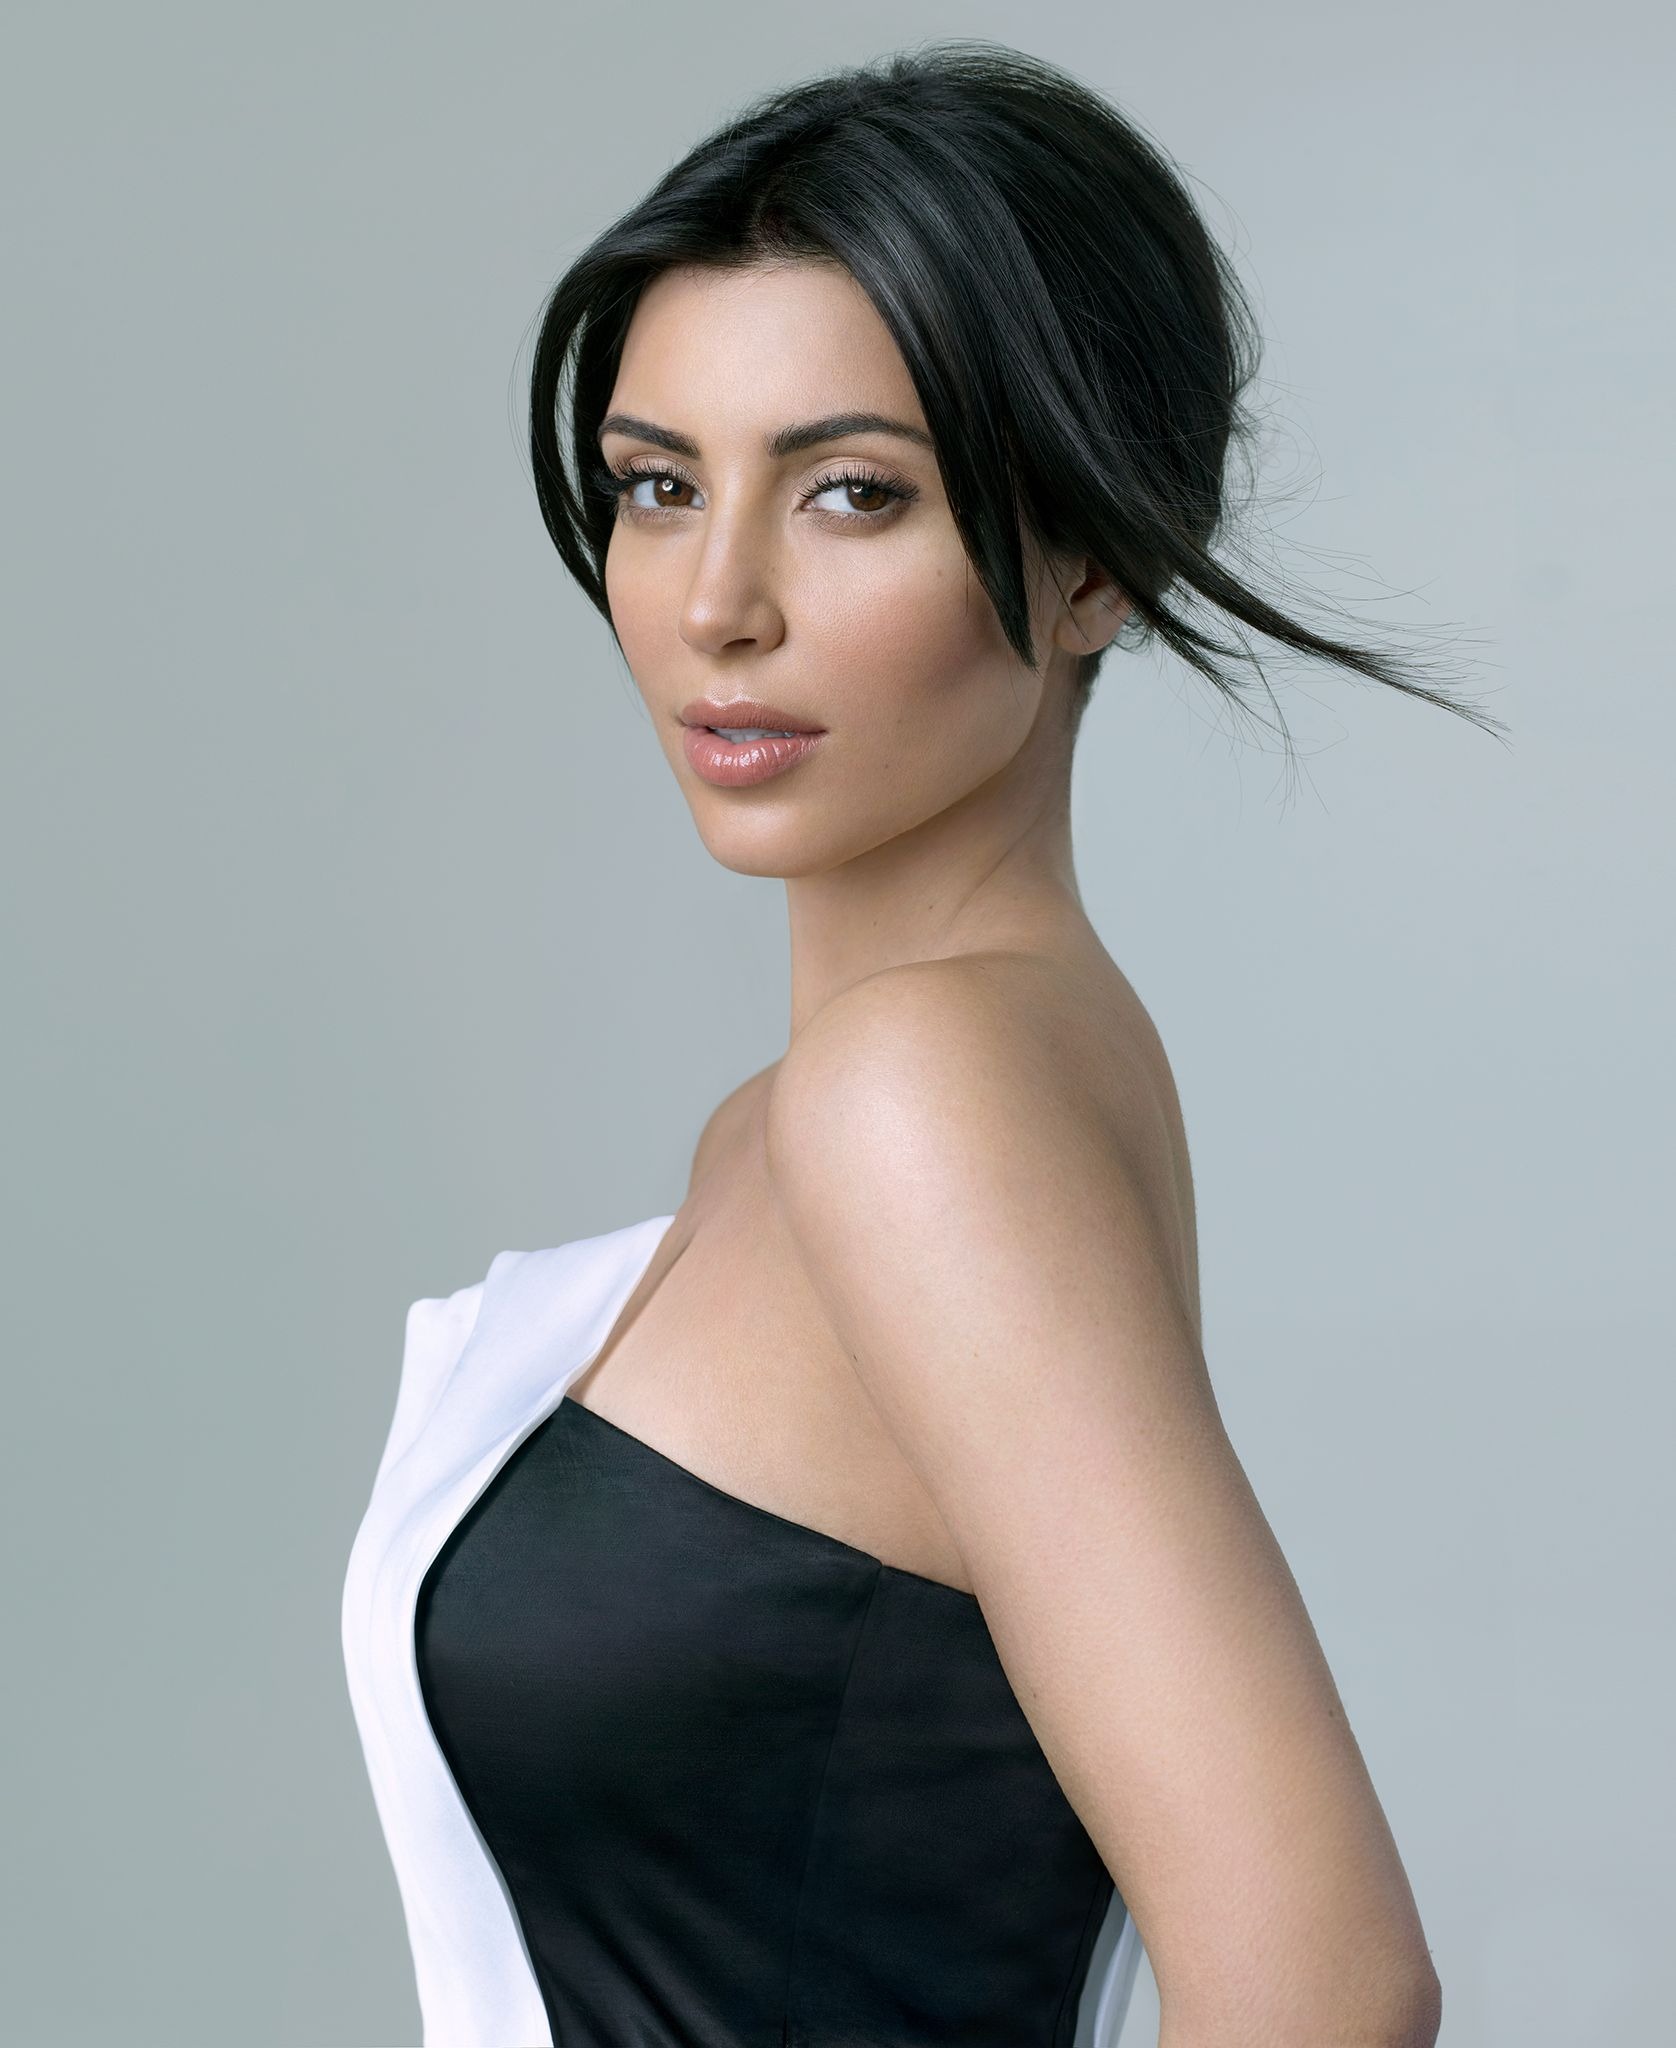 Kim Kardashian in profile in black and white dress